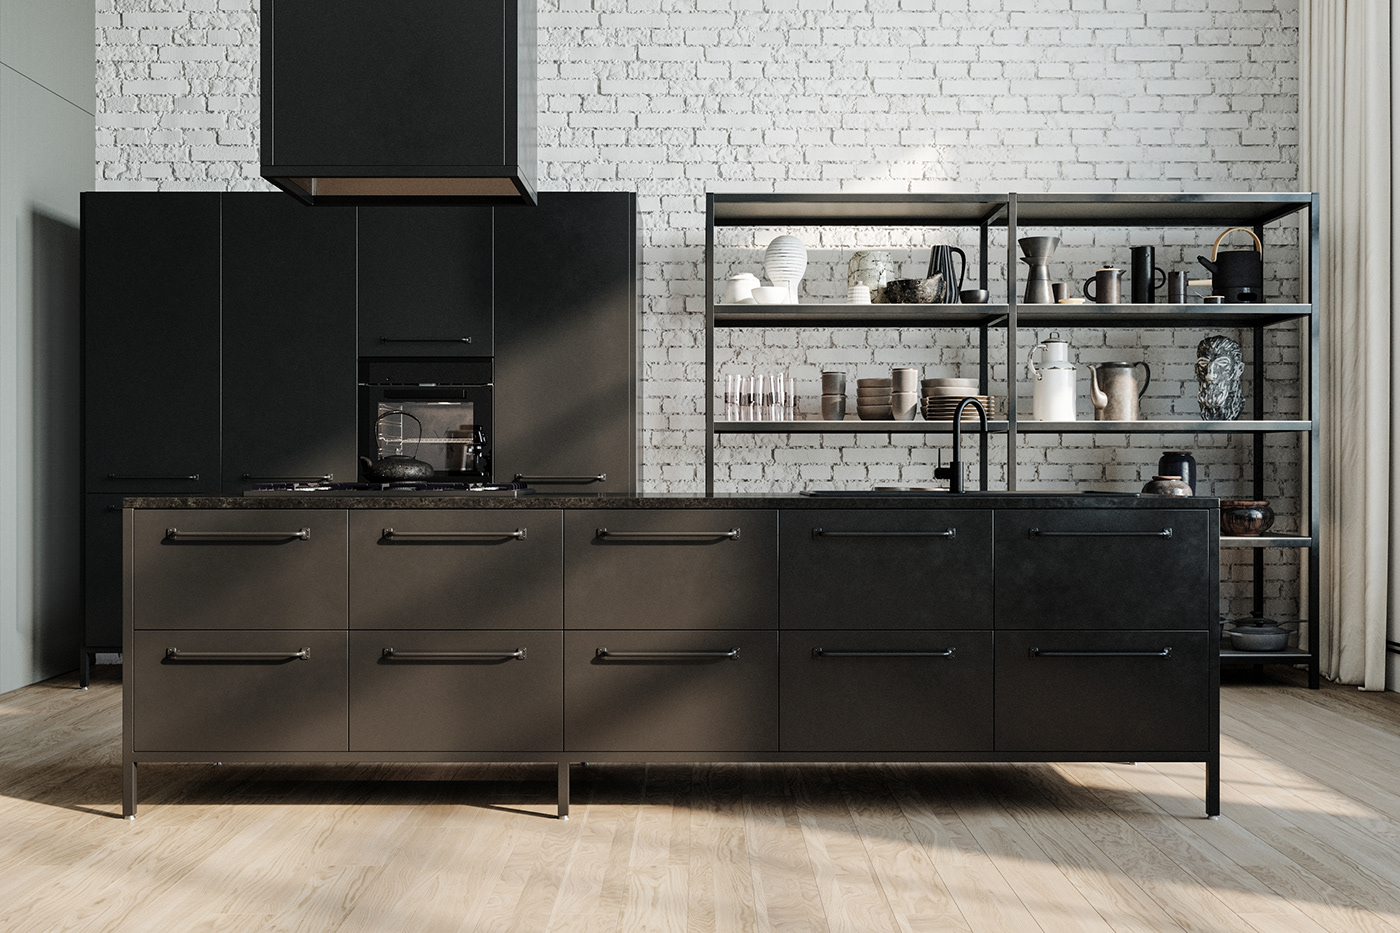 3D archviz kitchen CGI FStorm interior design  modern photorealistic Render visualization